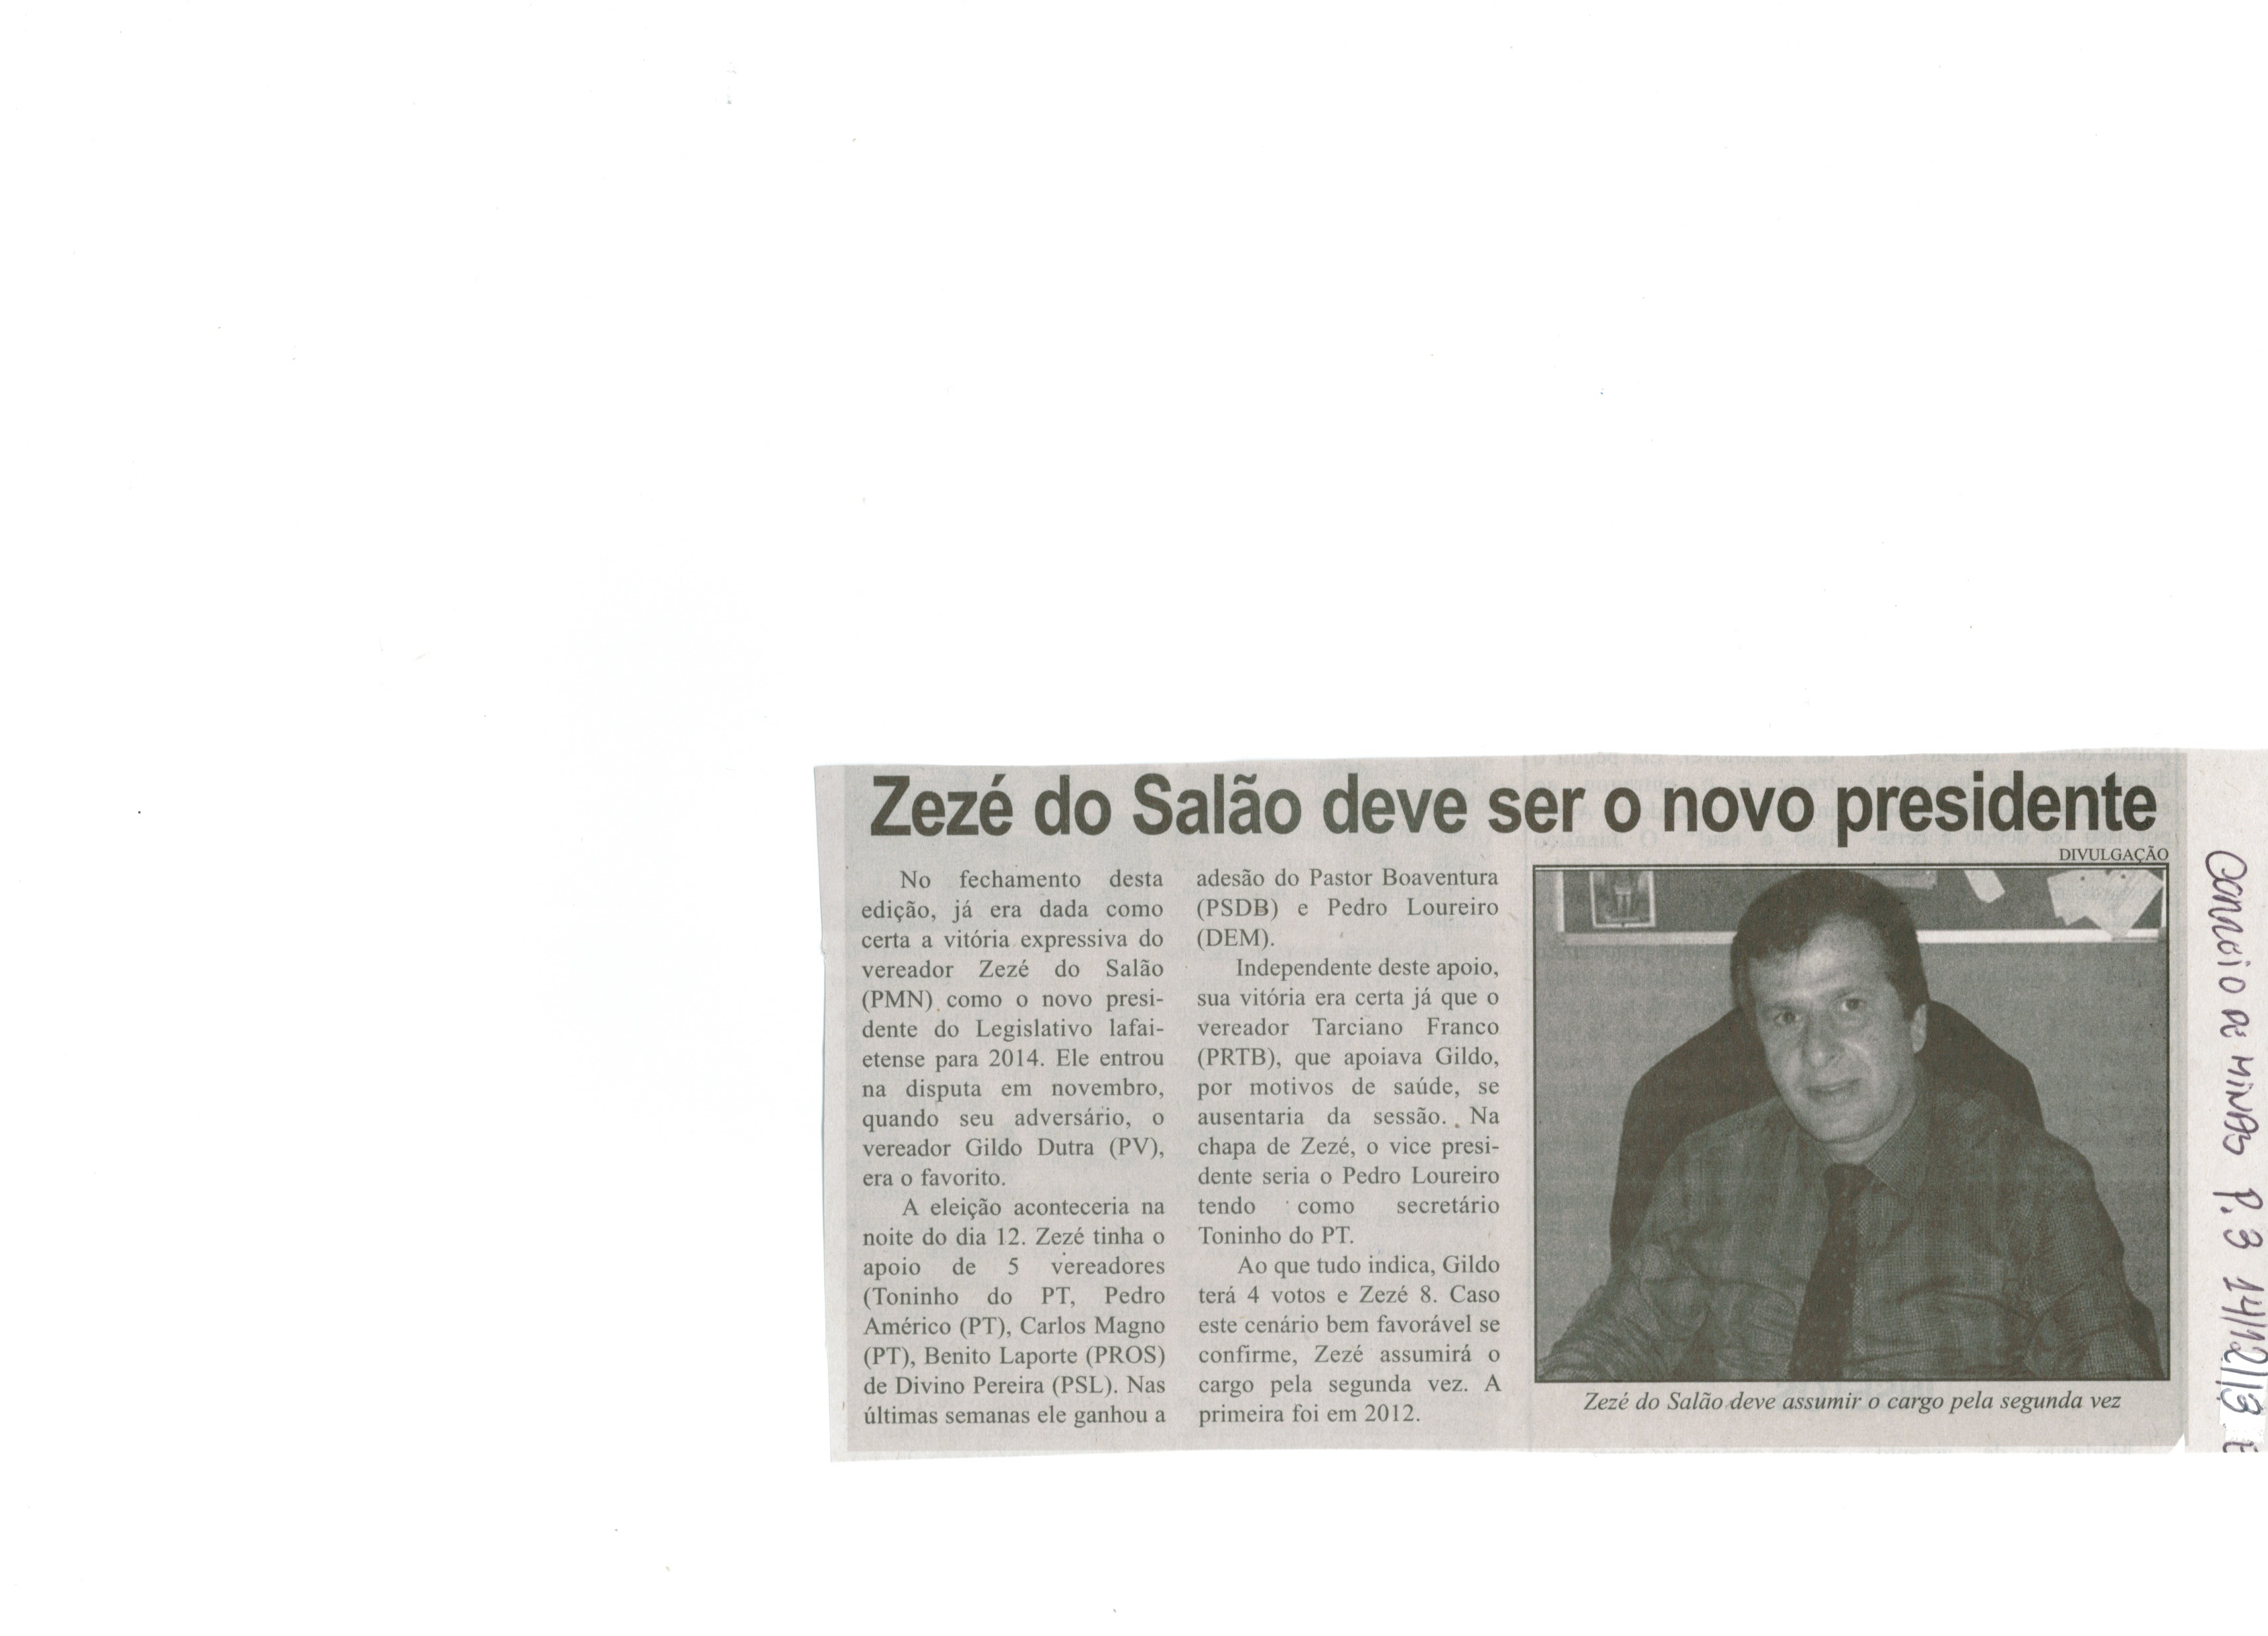 Zezé do Salão deve ser o novo presidente. Jornal Correio da Cidade, Conselheiro Lafaiete, 14 dez. 2013, p. 3.